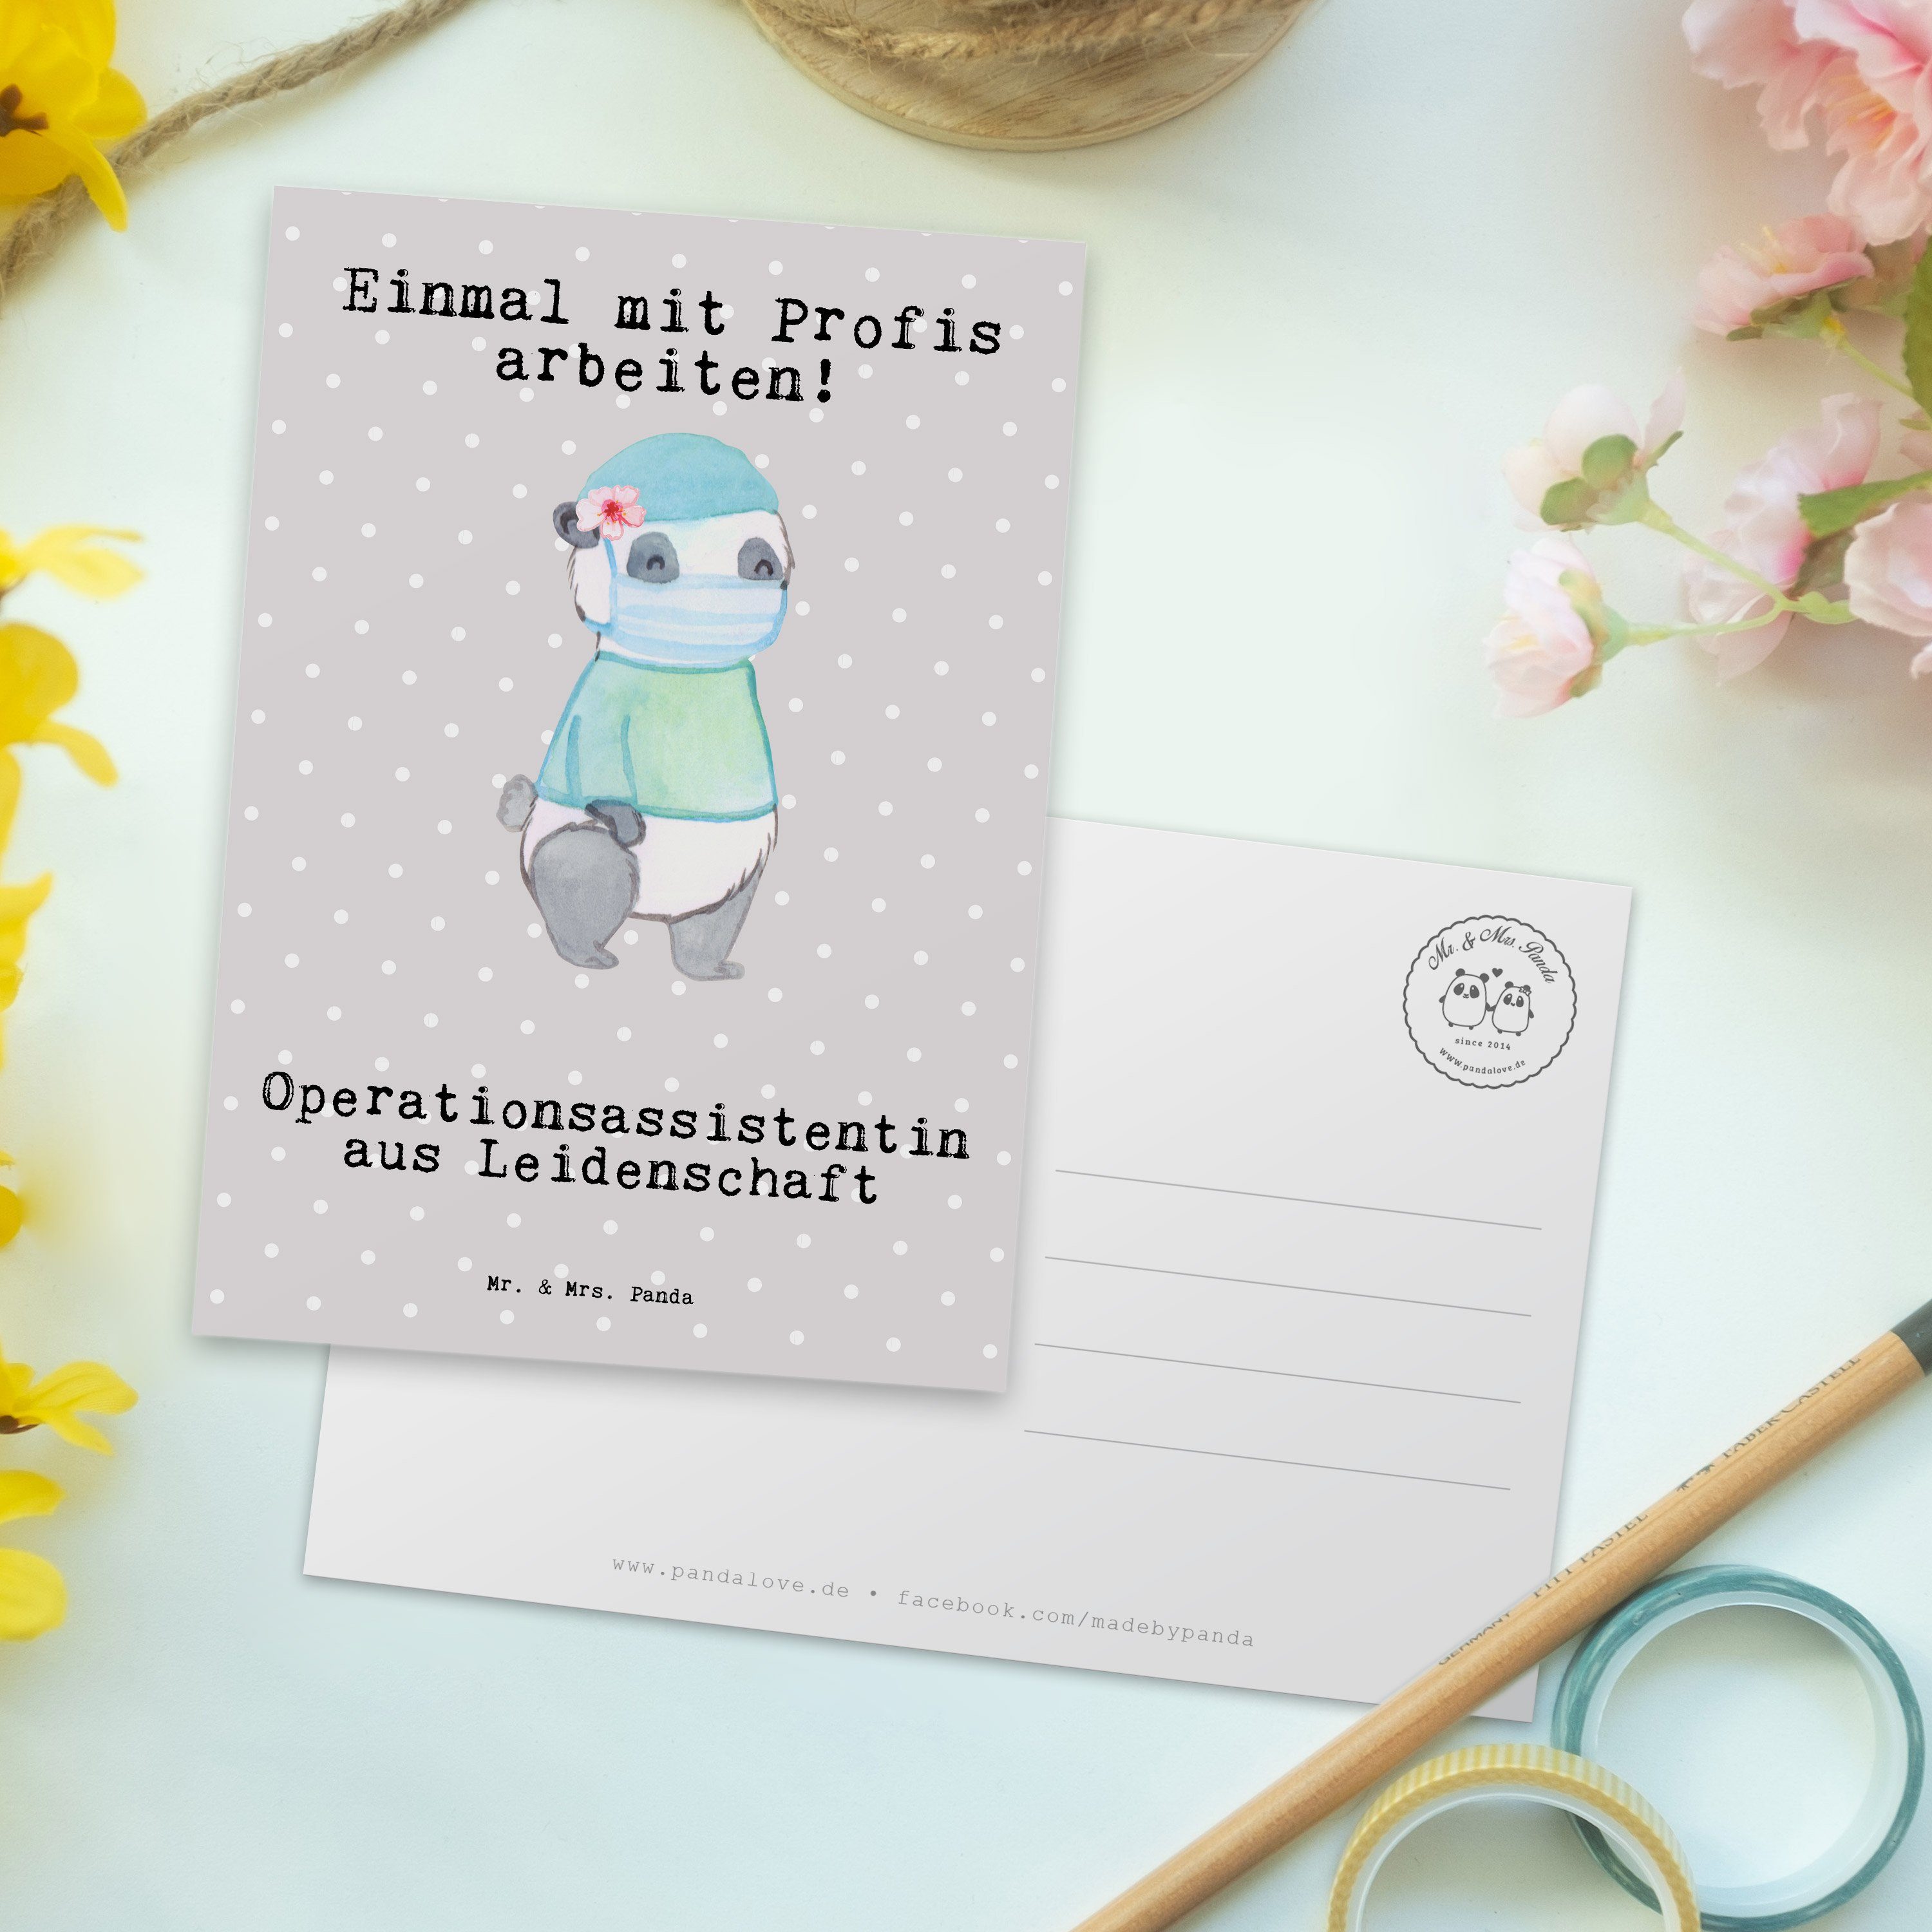 - Mr. Mrs. & Operationsassistentin Panda Postkarte Leidenschaft Fir aus Grau - Pastell Geschenk,